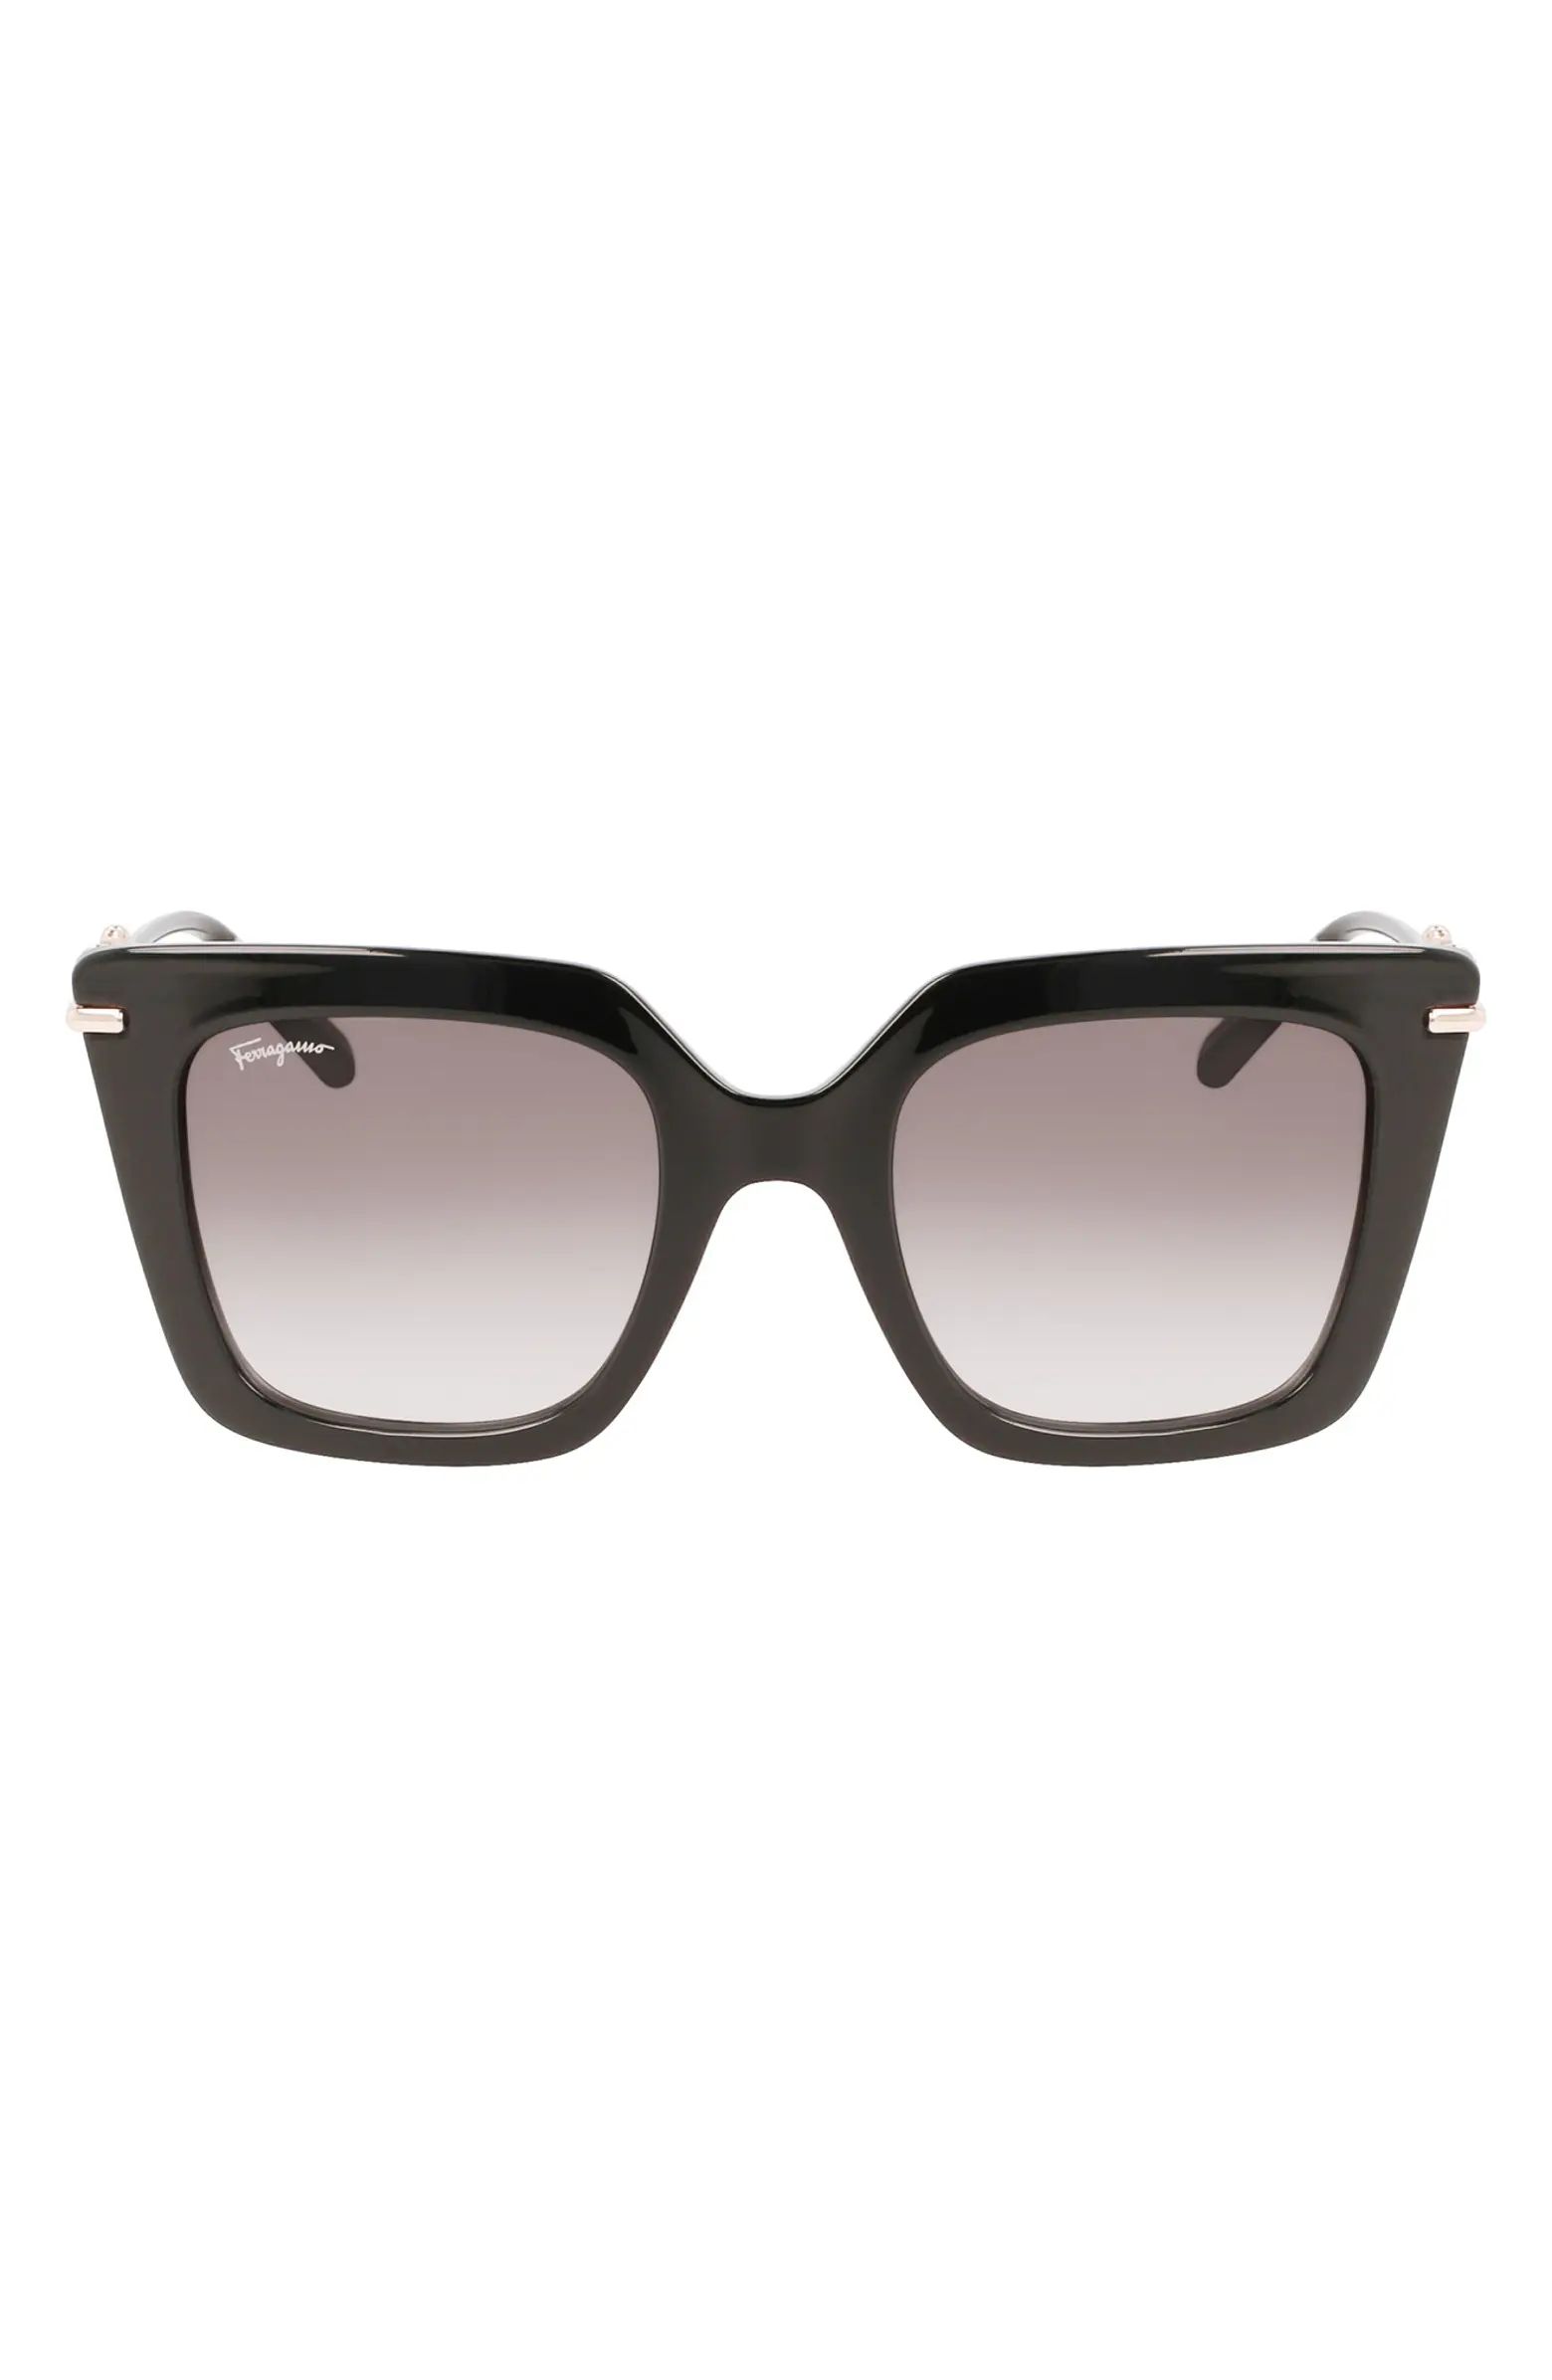 FERRAGAMO Gancini 51mm Rectangular Sunglasses | Nordstromrack | Nordstrom Rack